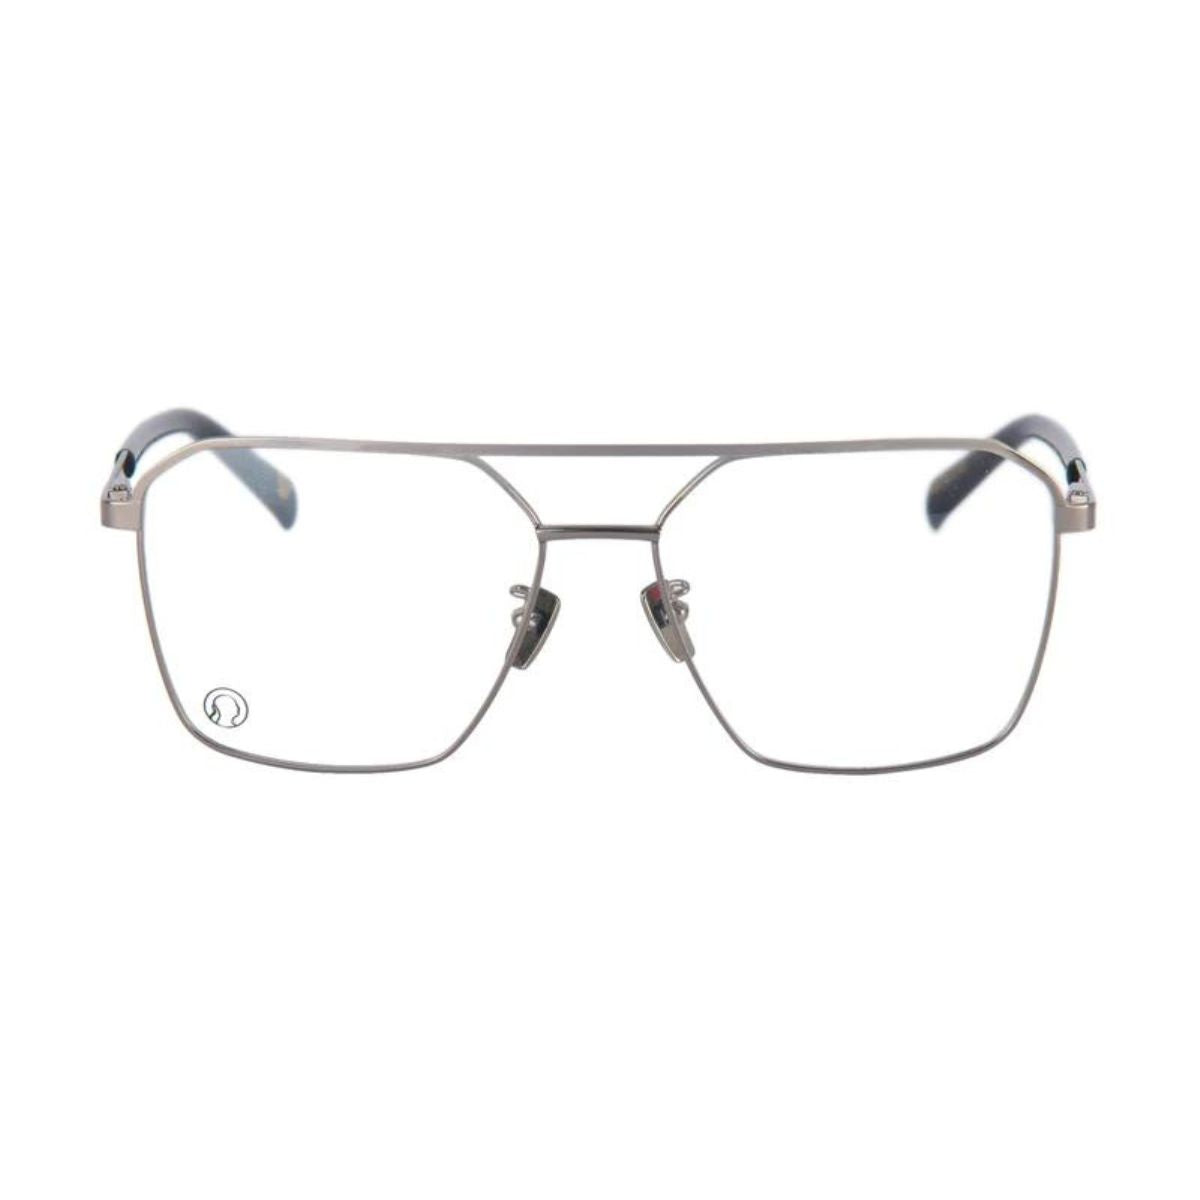 "buy The Monk Revolution C4 square shape power glasses frame for men's online at optorium"